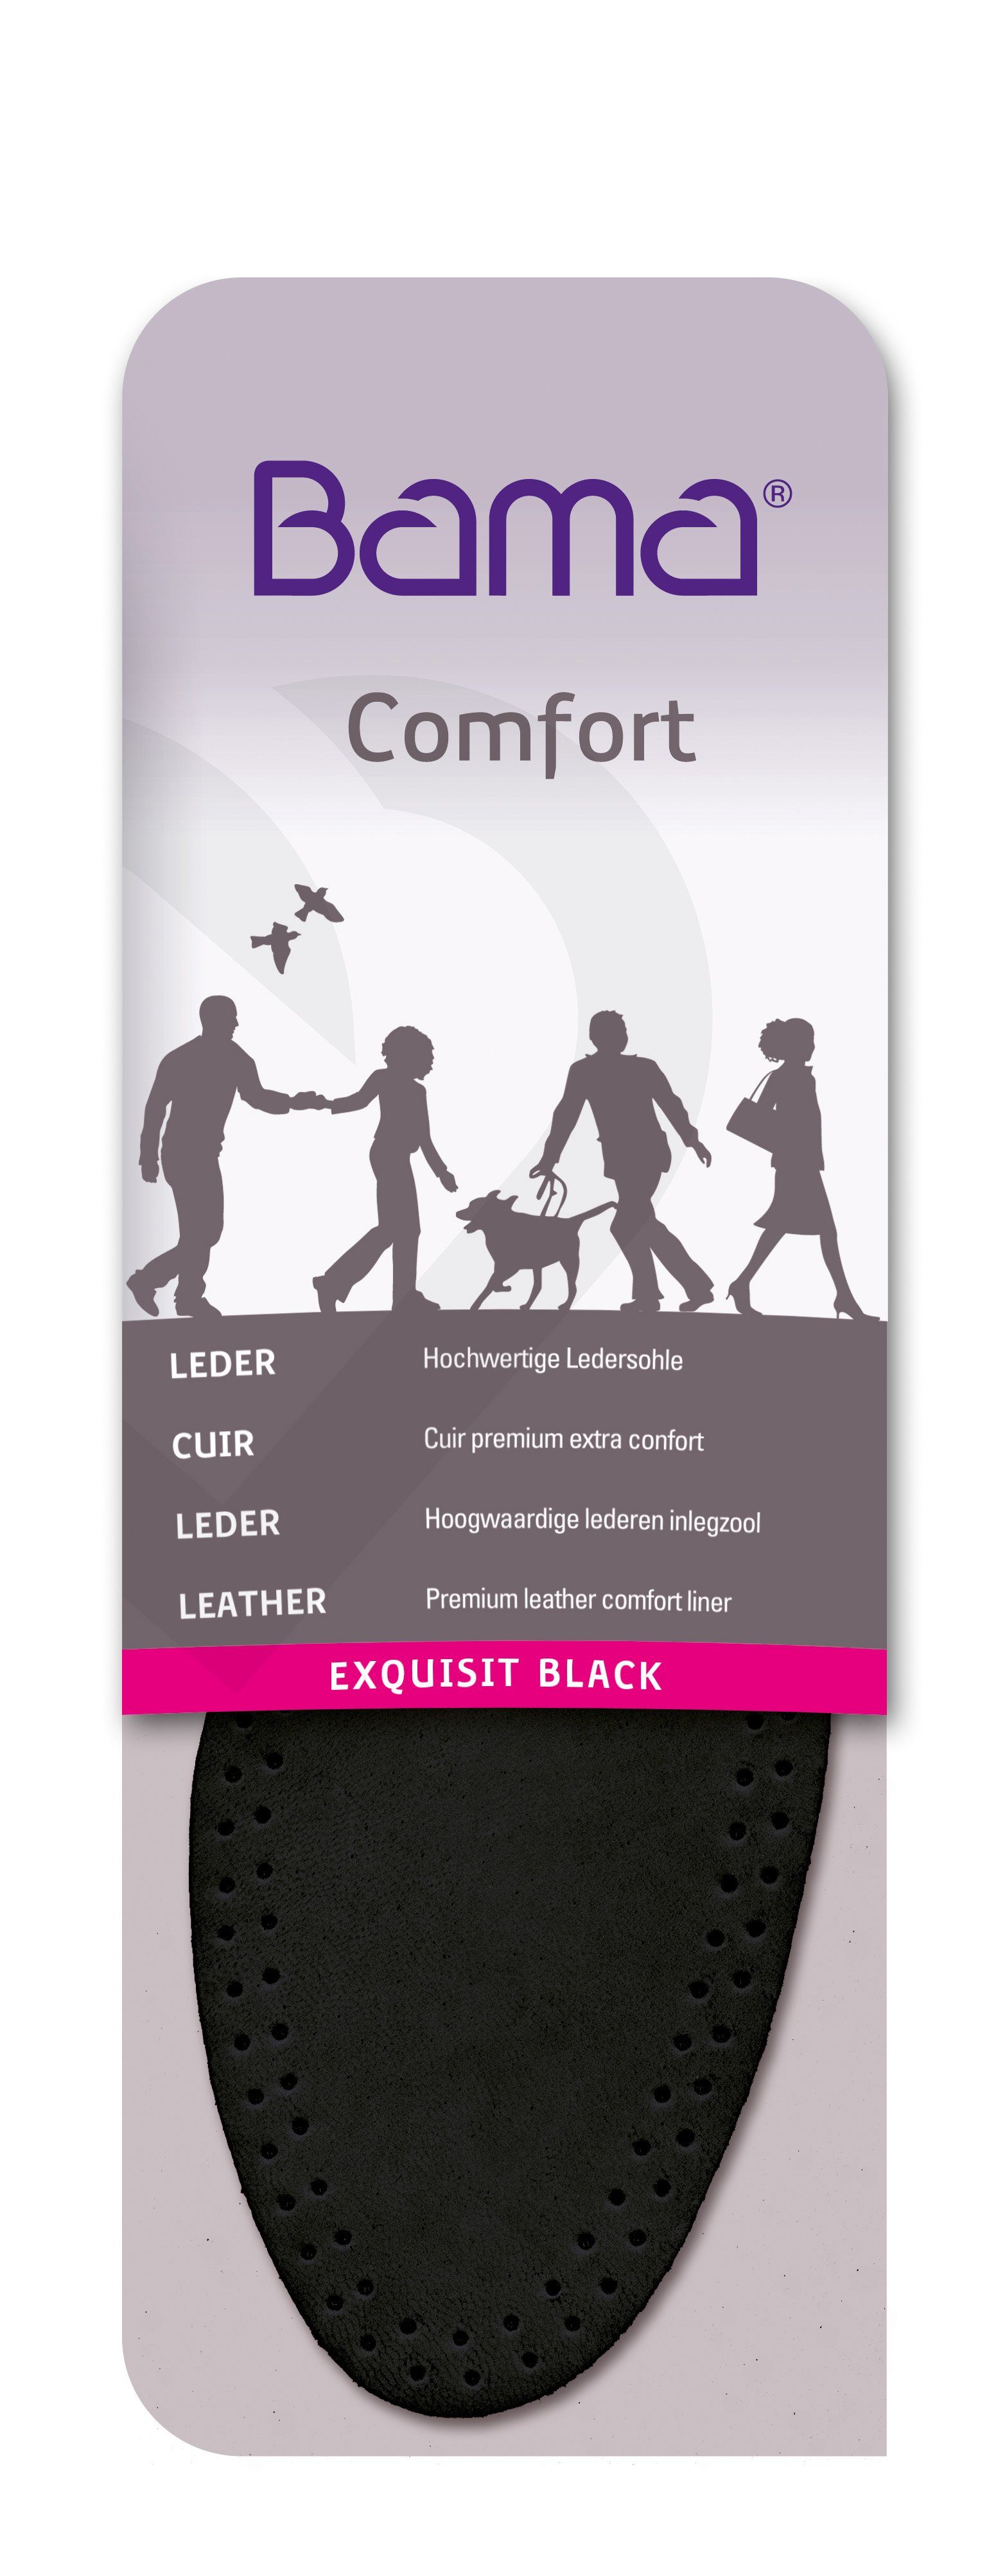 Schwarz in Hochwertige zusätzlichen Group Ledersohlen BAMA Black Ledersohle - Komfort Exquisit für